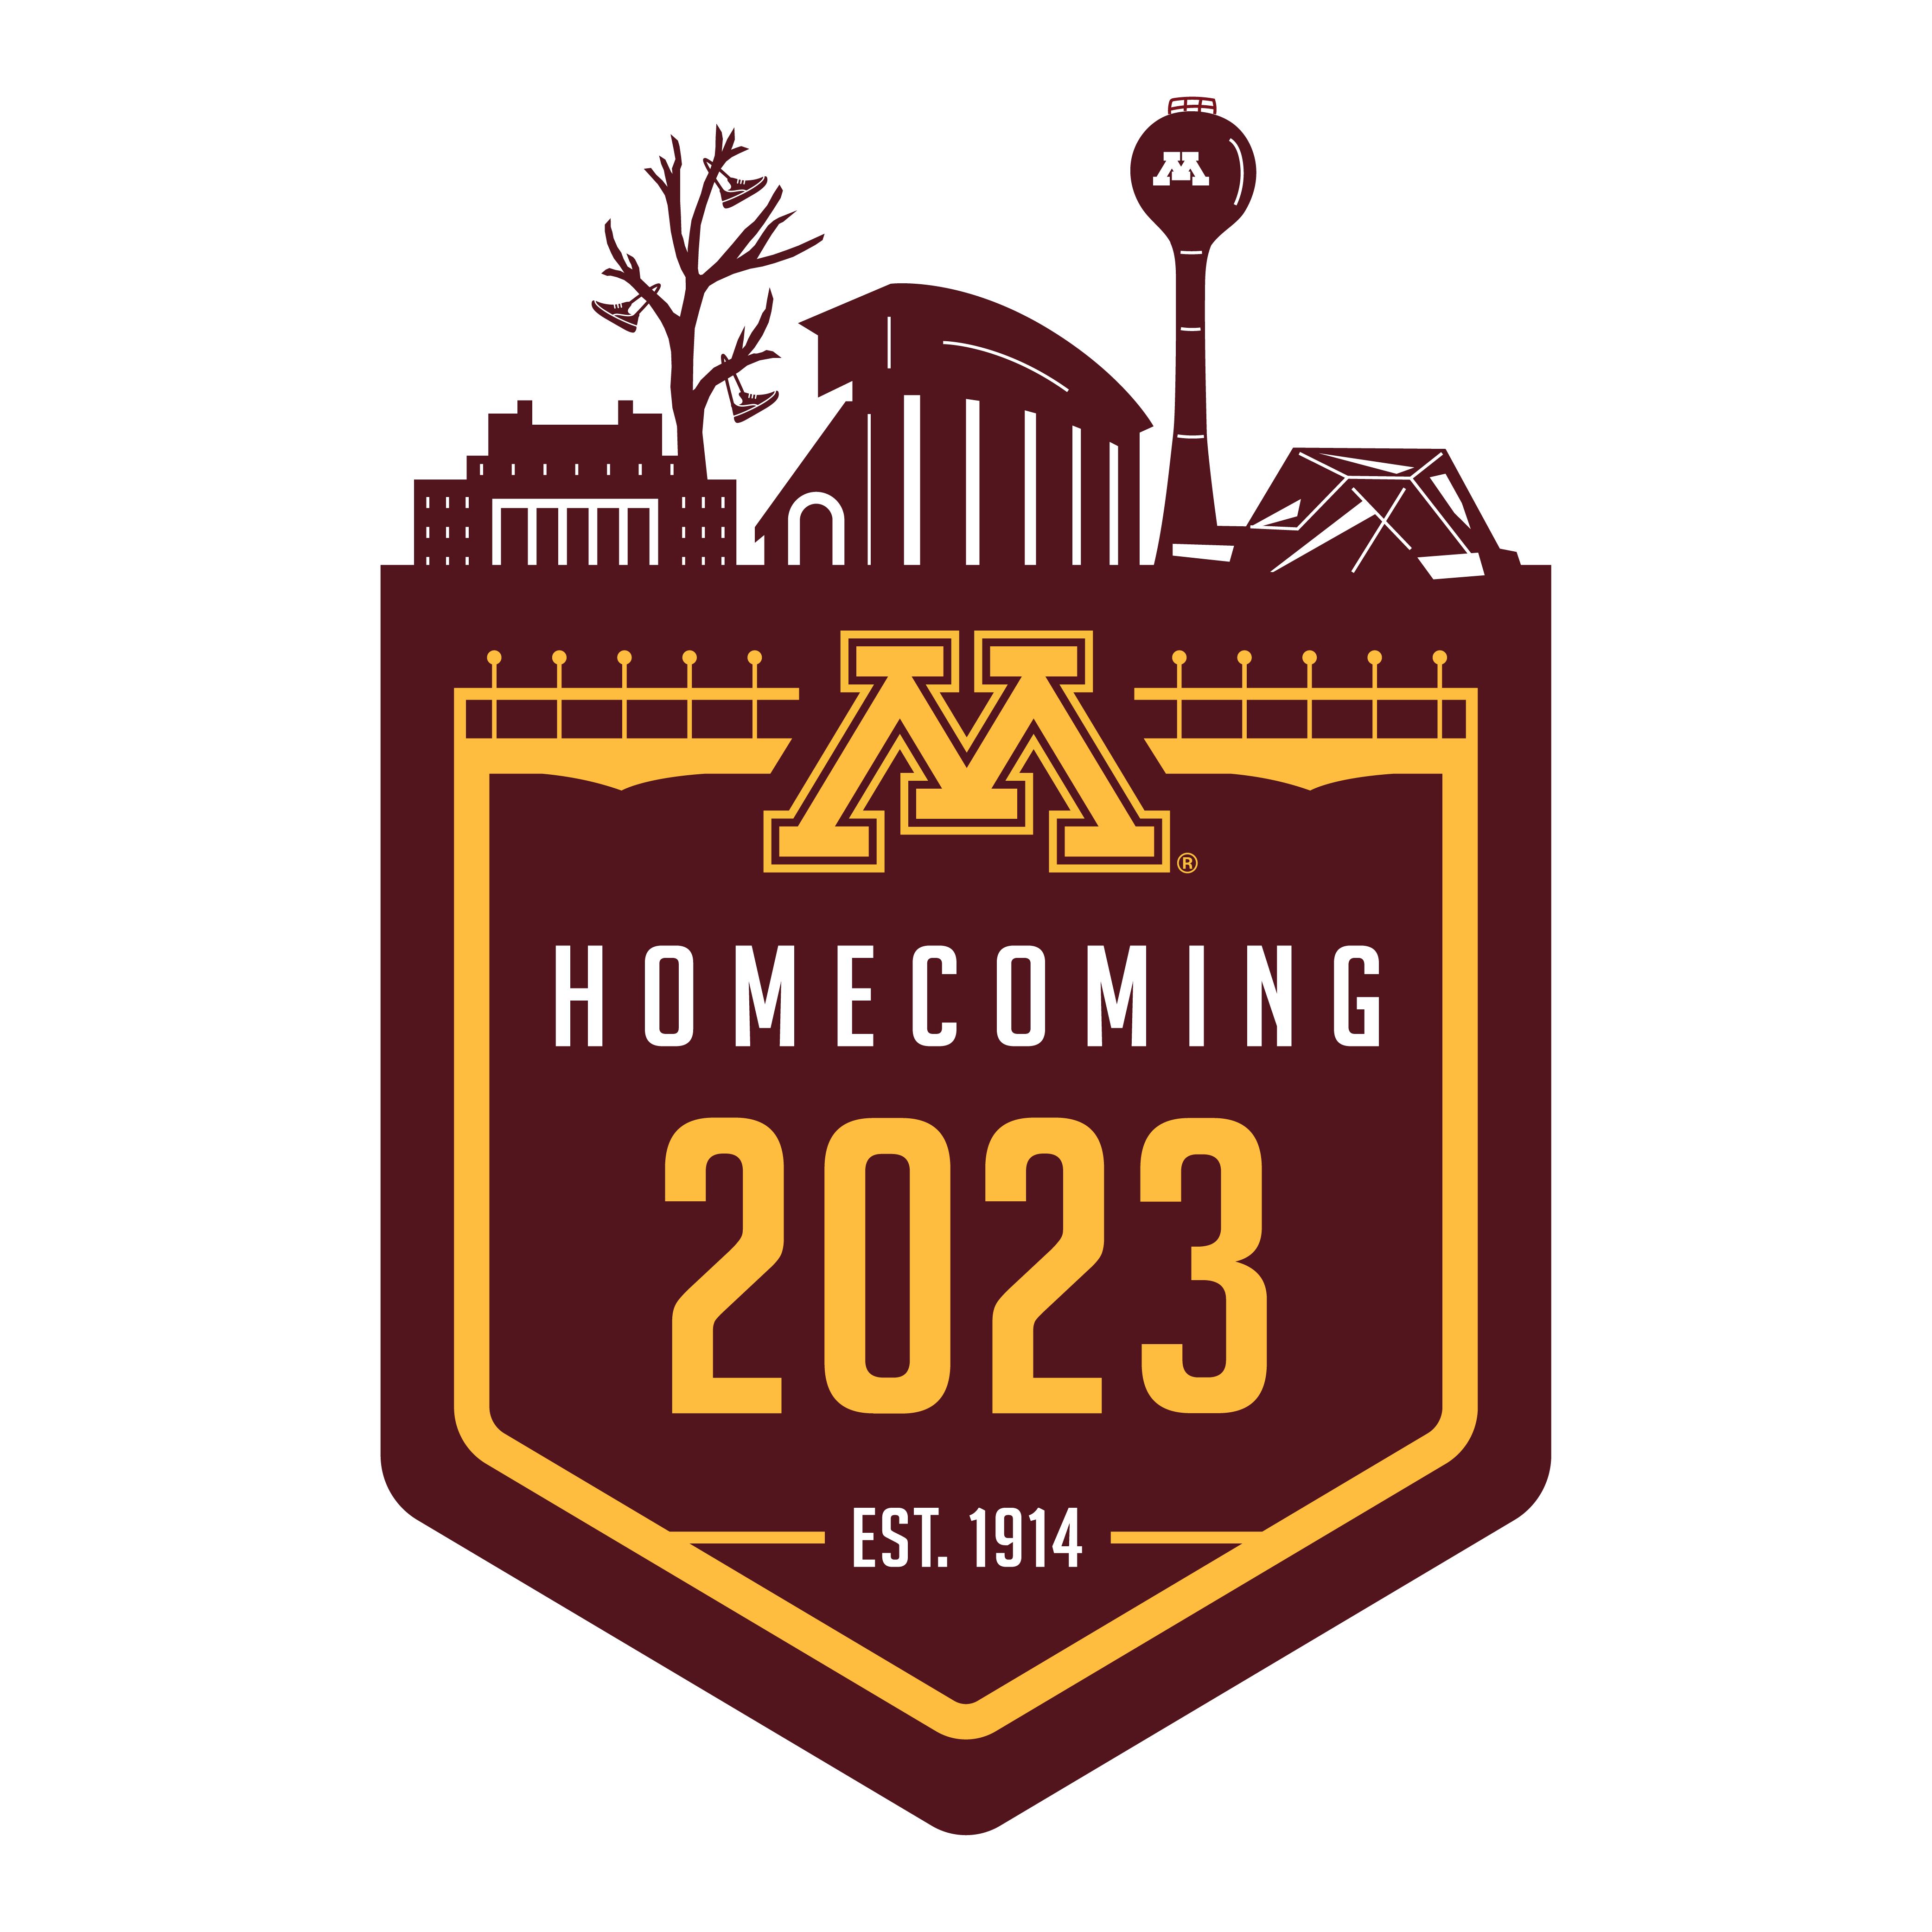 Homecoming logo maroon and gold